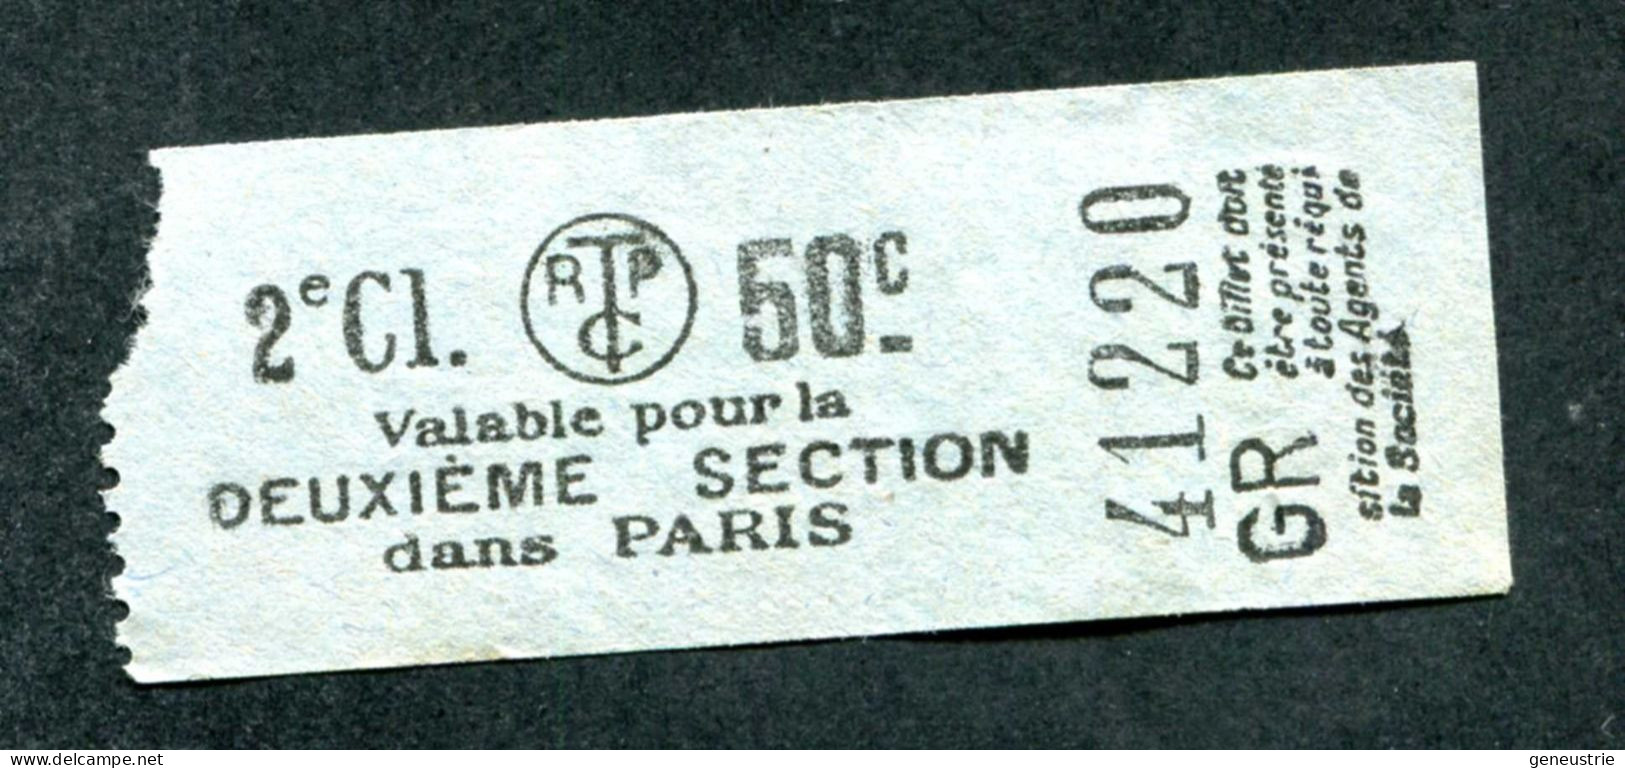 Ticket De Tramways Parisiens 1921 à 1938 (STCRP) 2e Classe 50c - Paris" Tramway - Tram - Europe